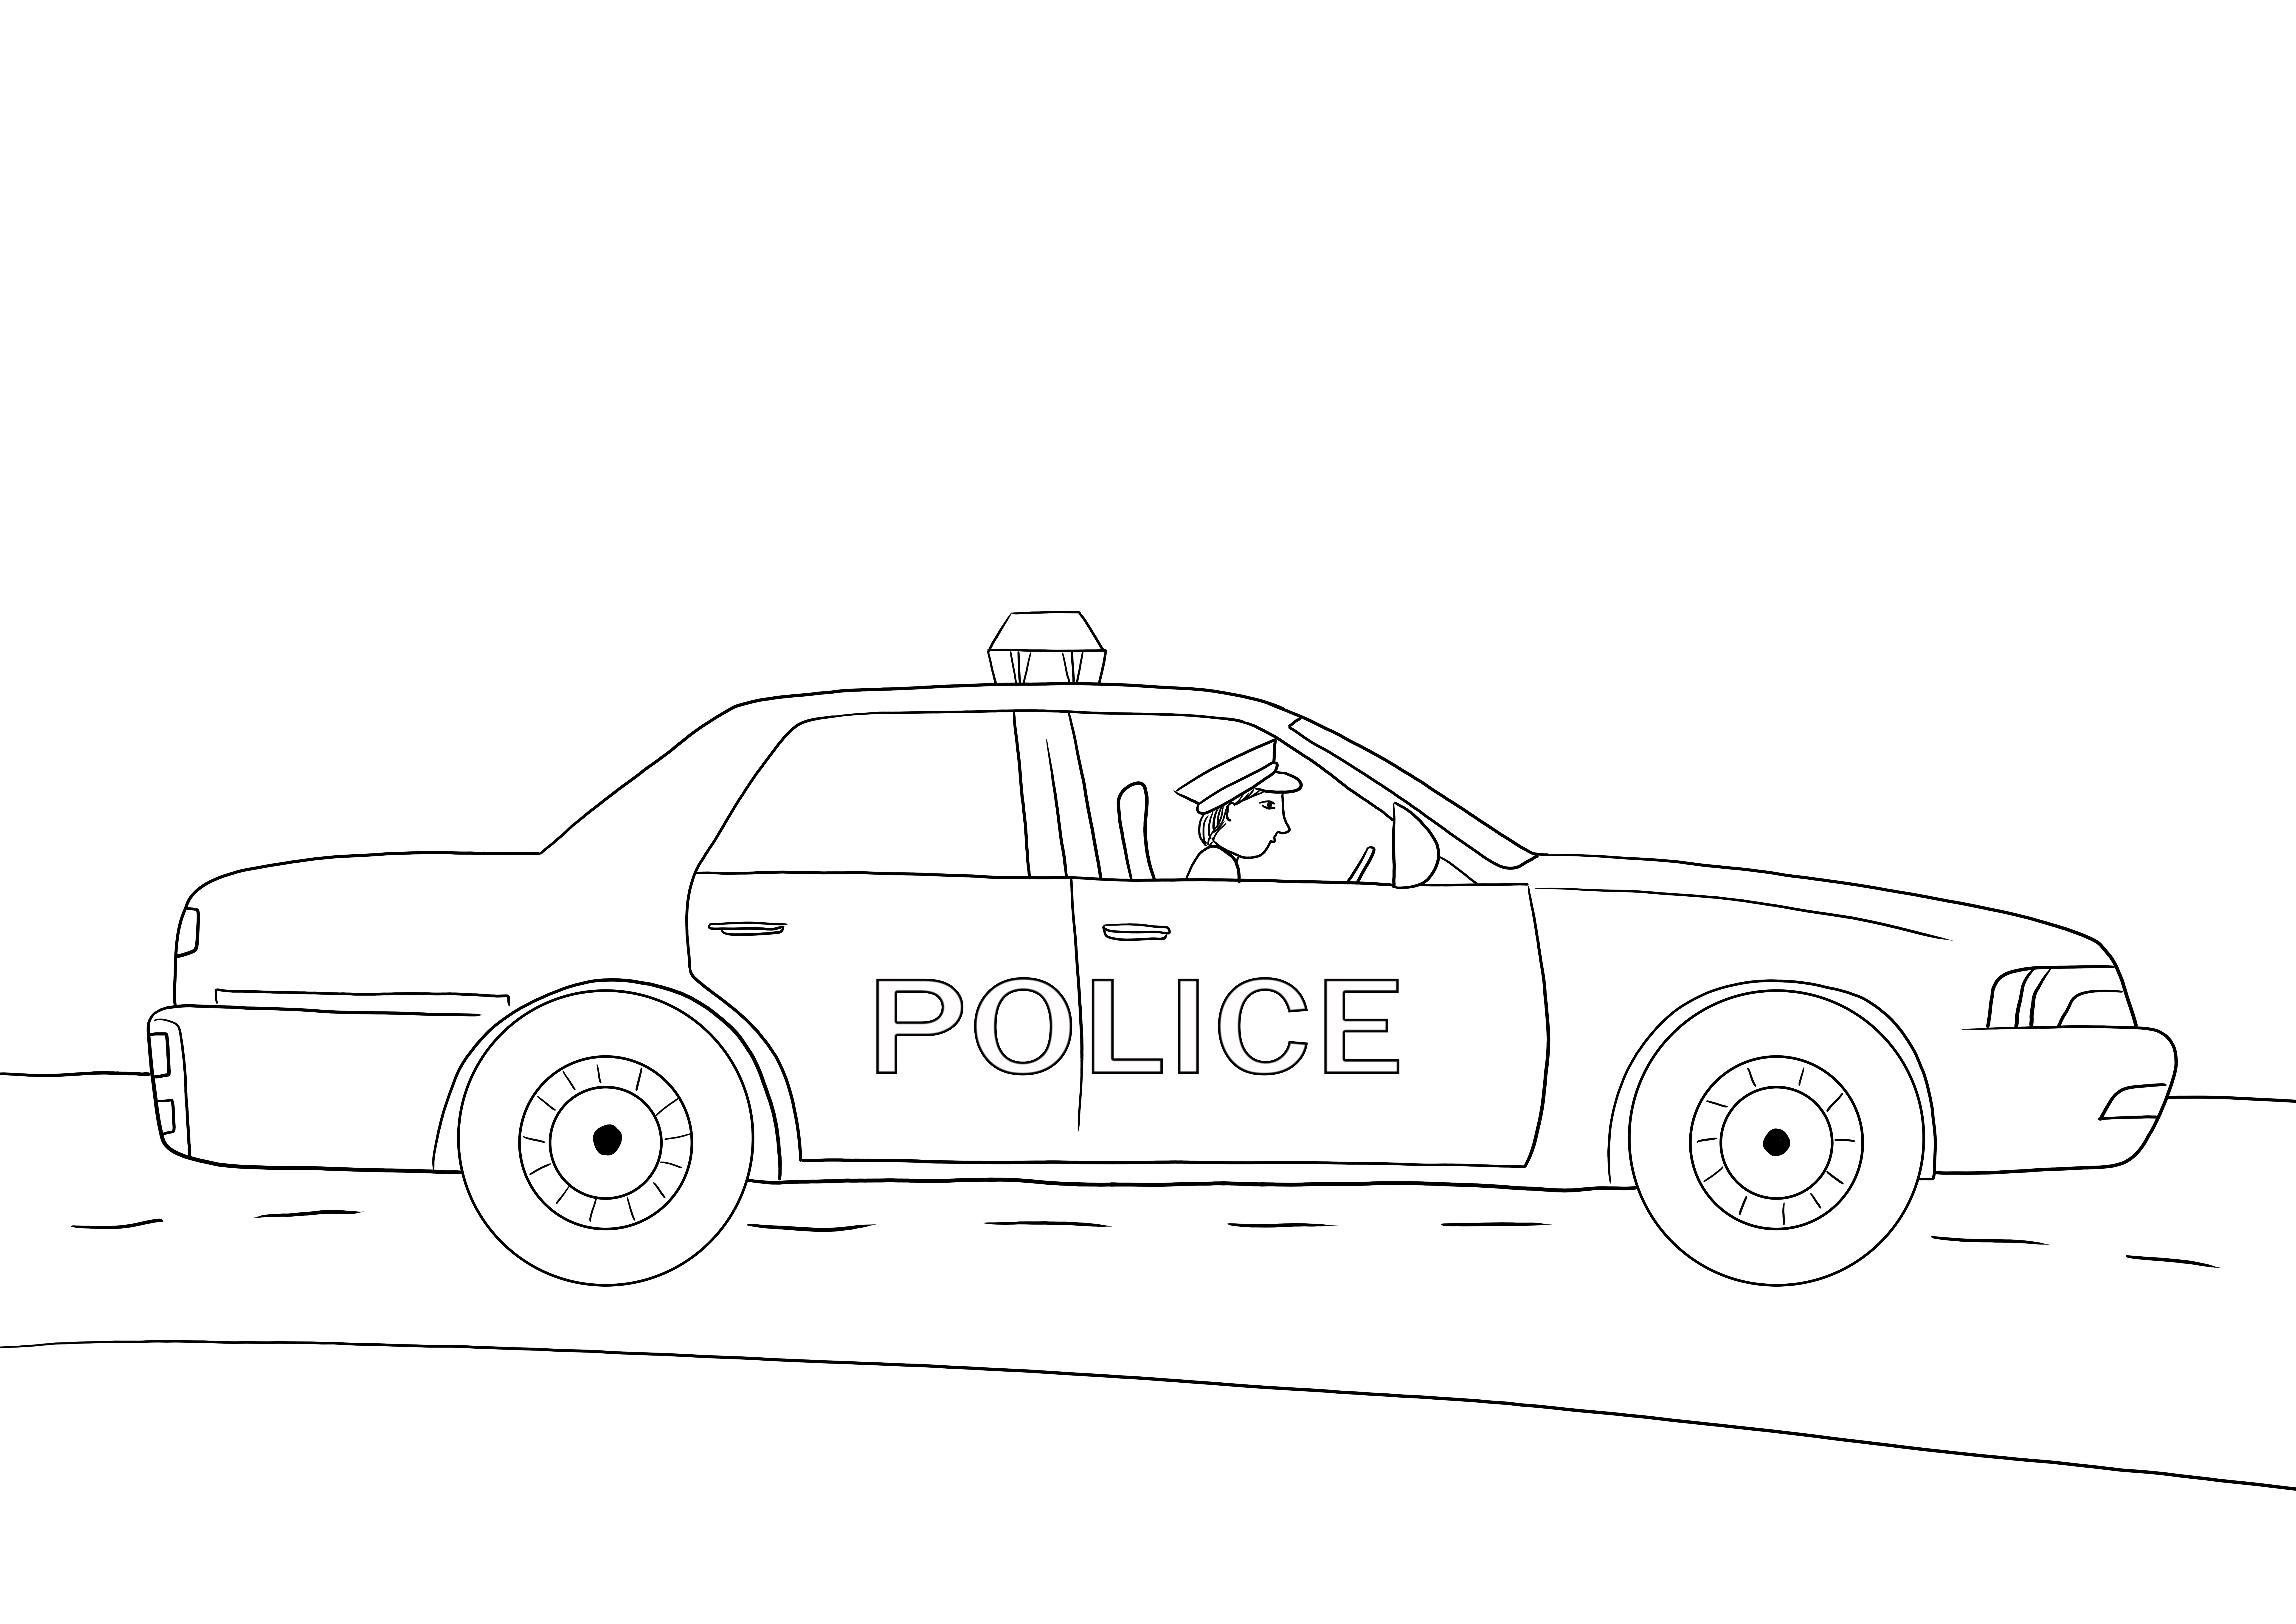 Stampa gratuita di auto della polizia per tutti gli amanti delle auto su fogli a colori